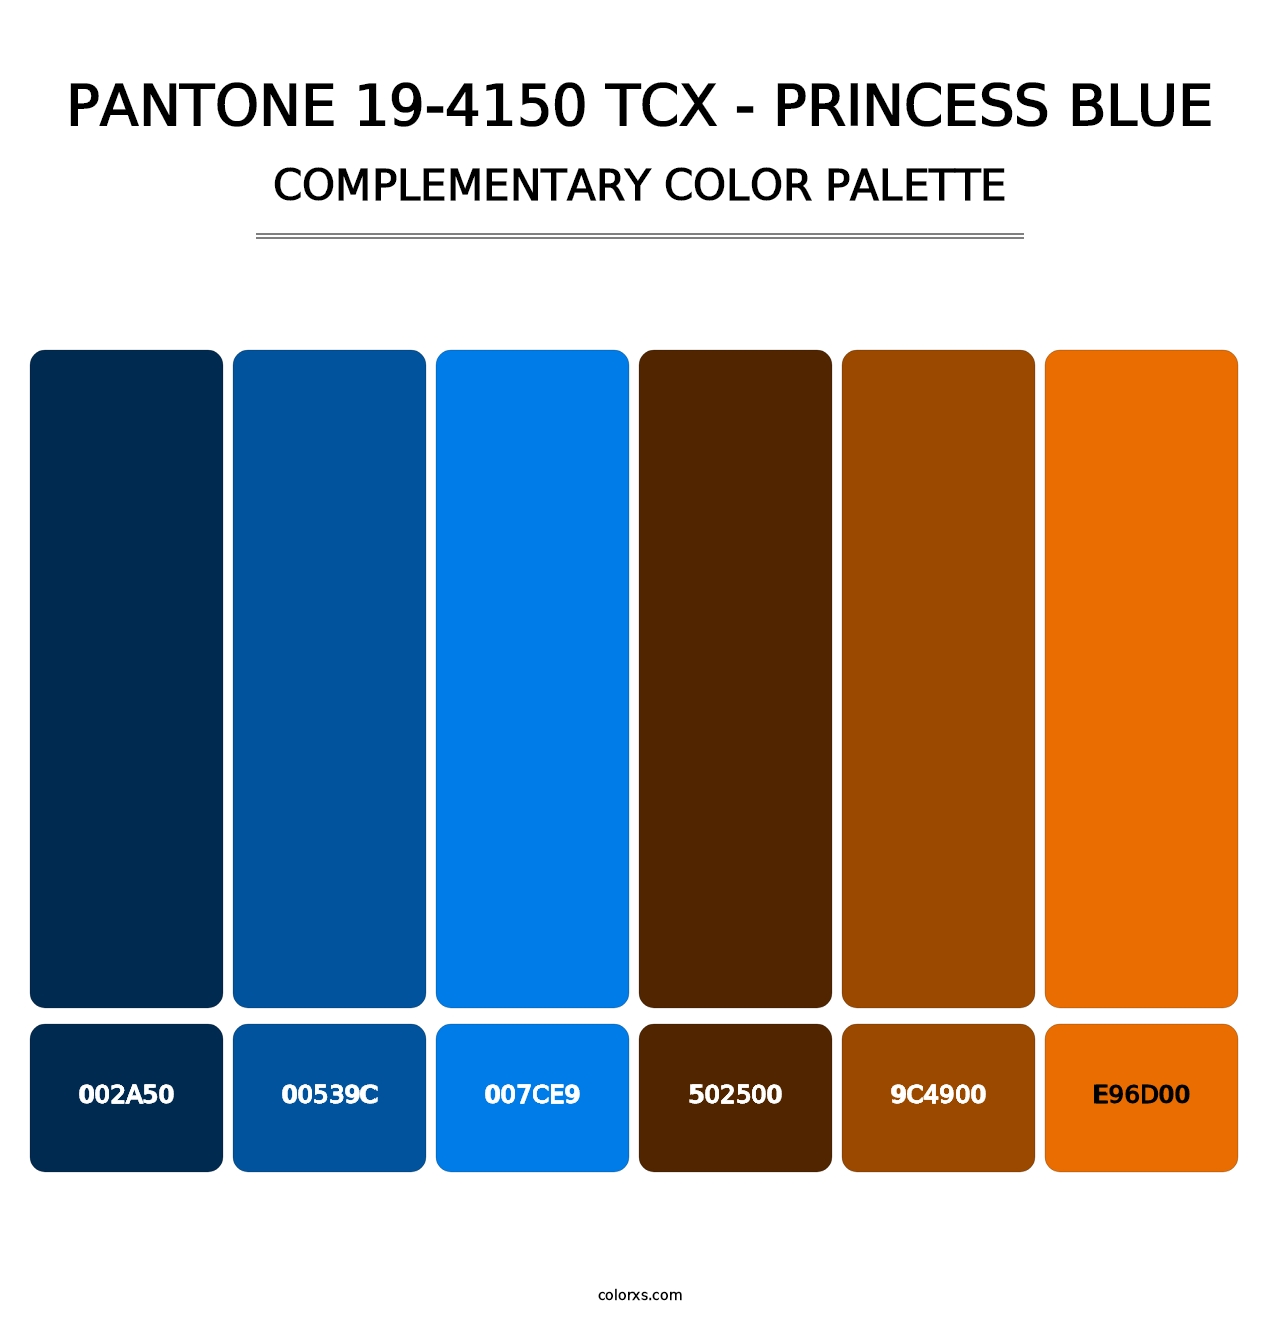 PANTONE 19-4150 TCX - Princess Blue - Complementary Color Palette